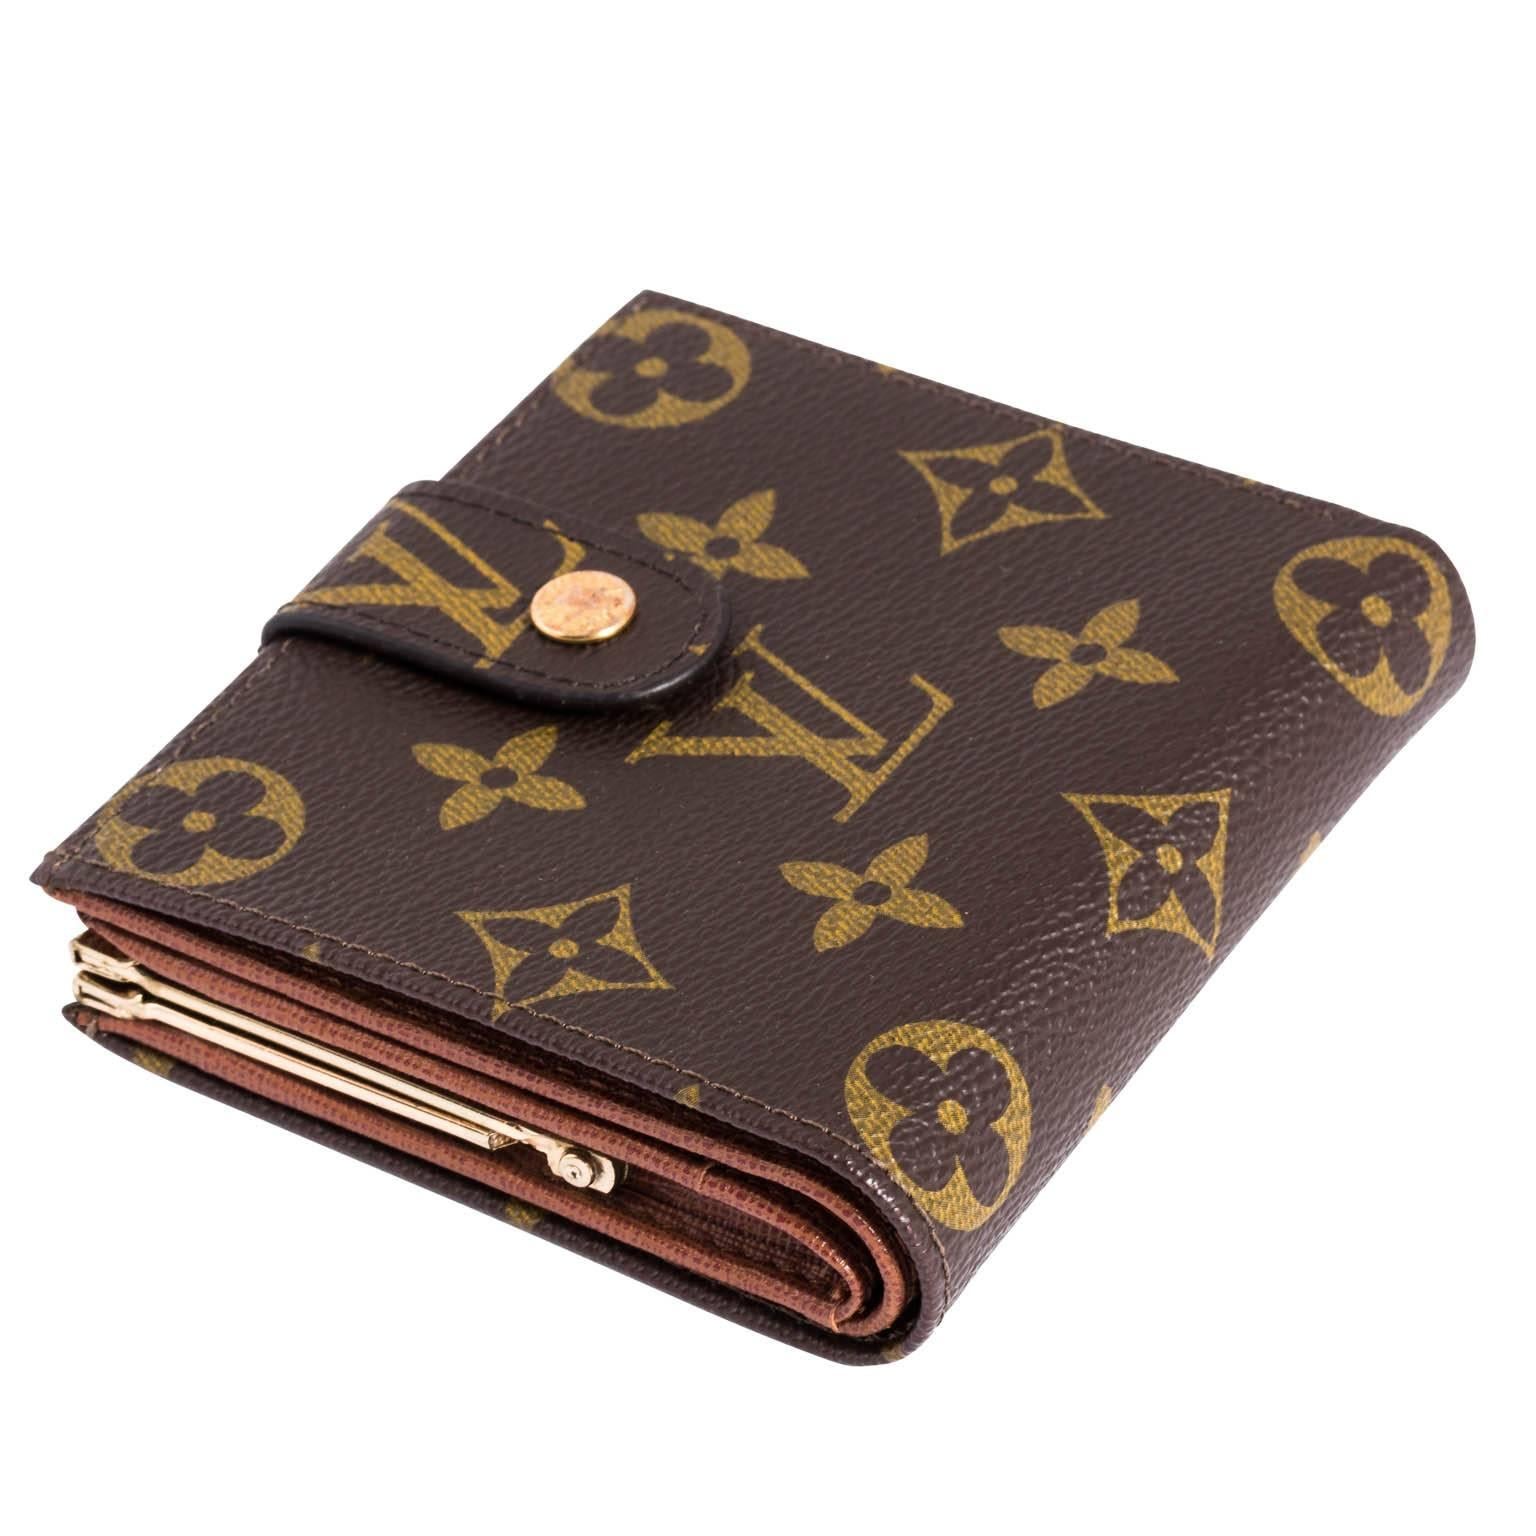 Louis Vuitton Black Monogram Vernis Sarah Compact Wallet - Ann's